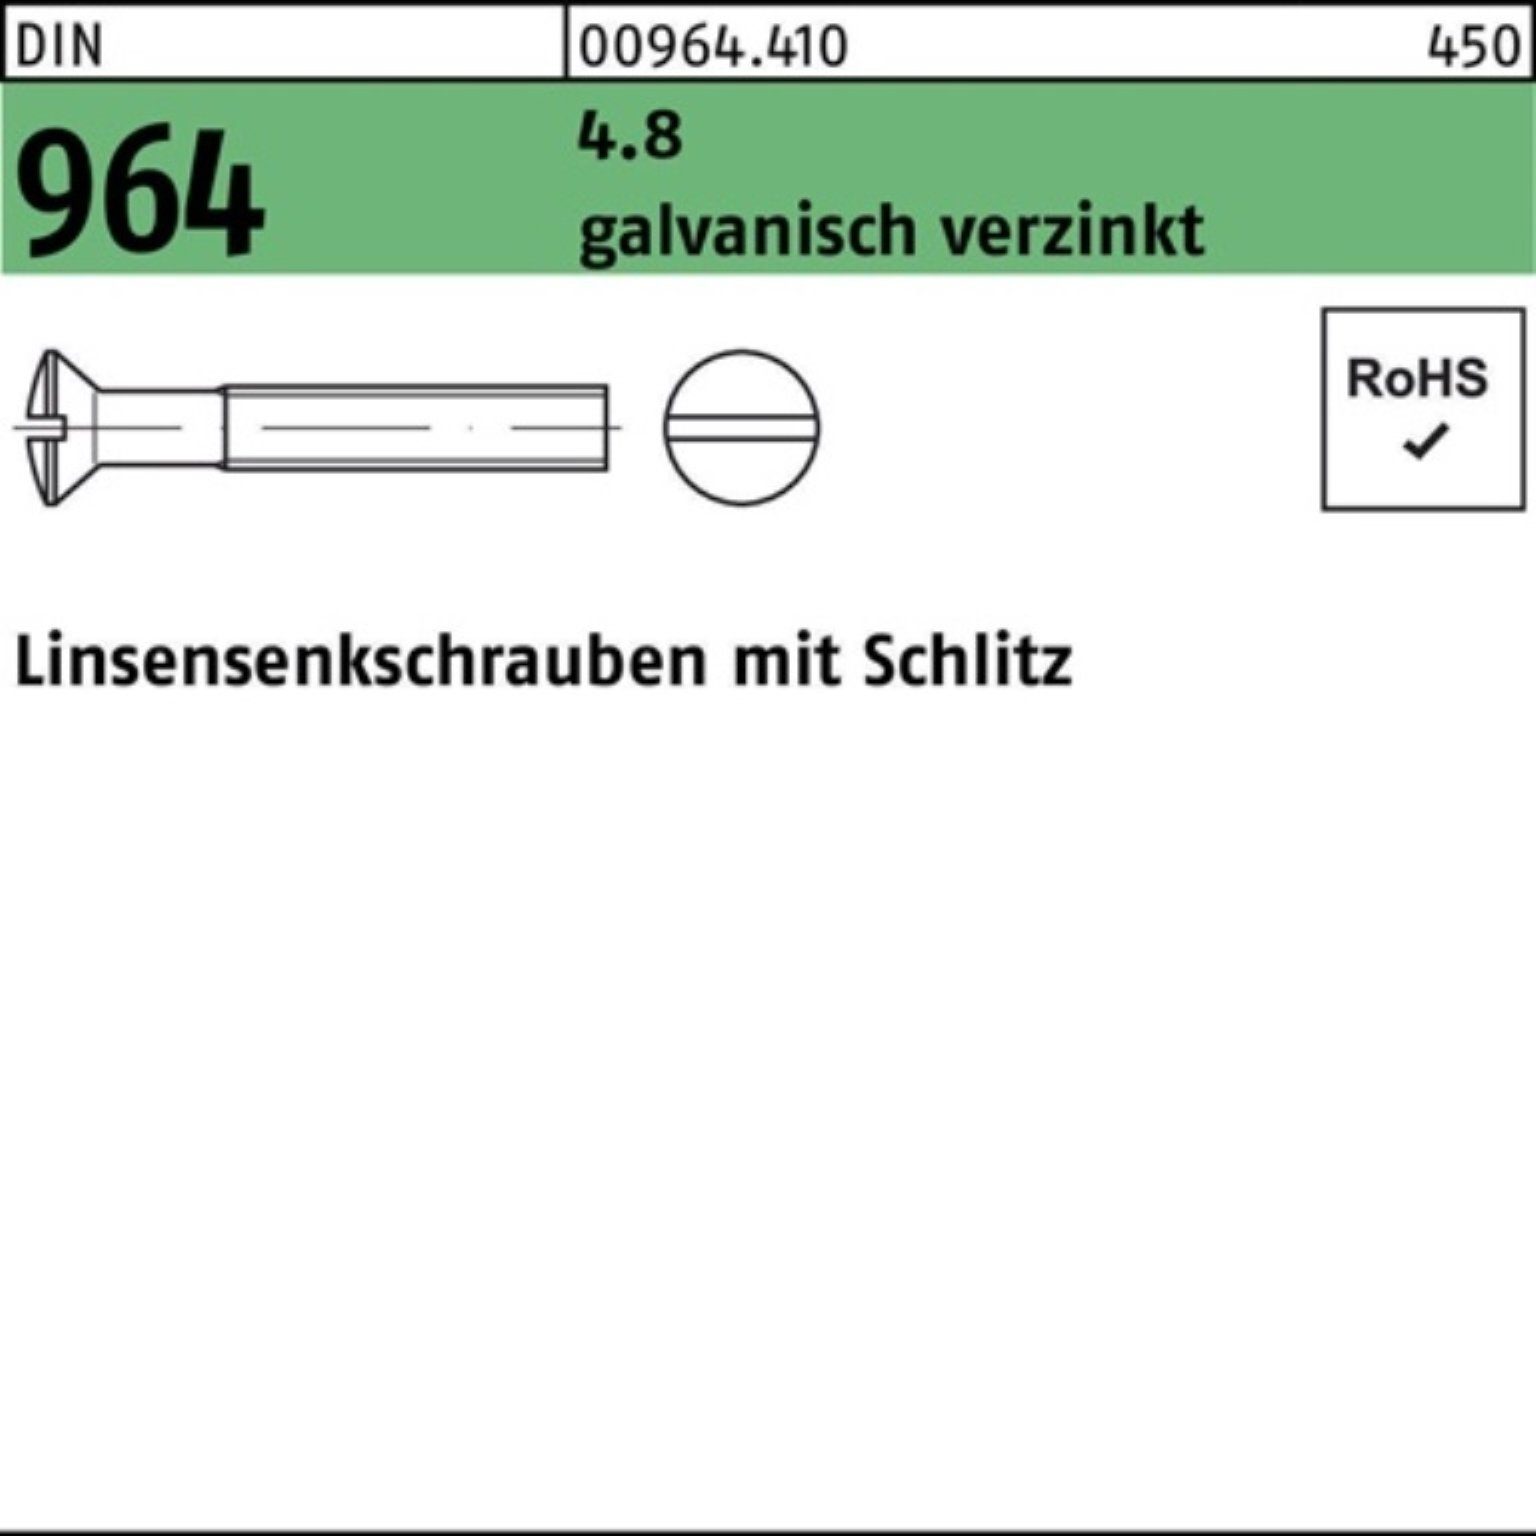 Linsenschraube Schlitz Reyher Pack 20 M5x galv.verz. 964 DIN 200er Linsensenkschraube 10 4.8